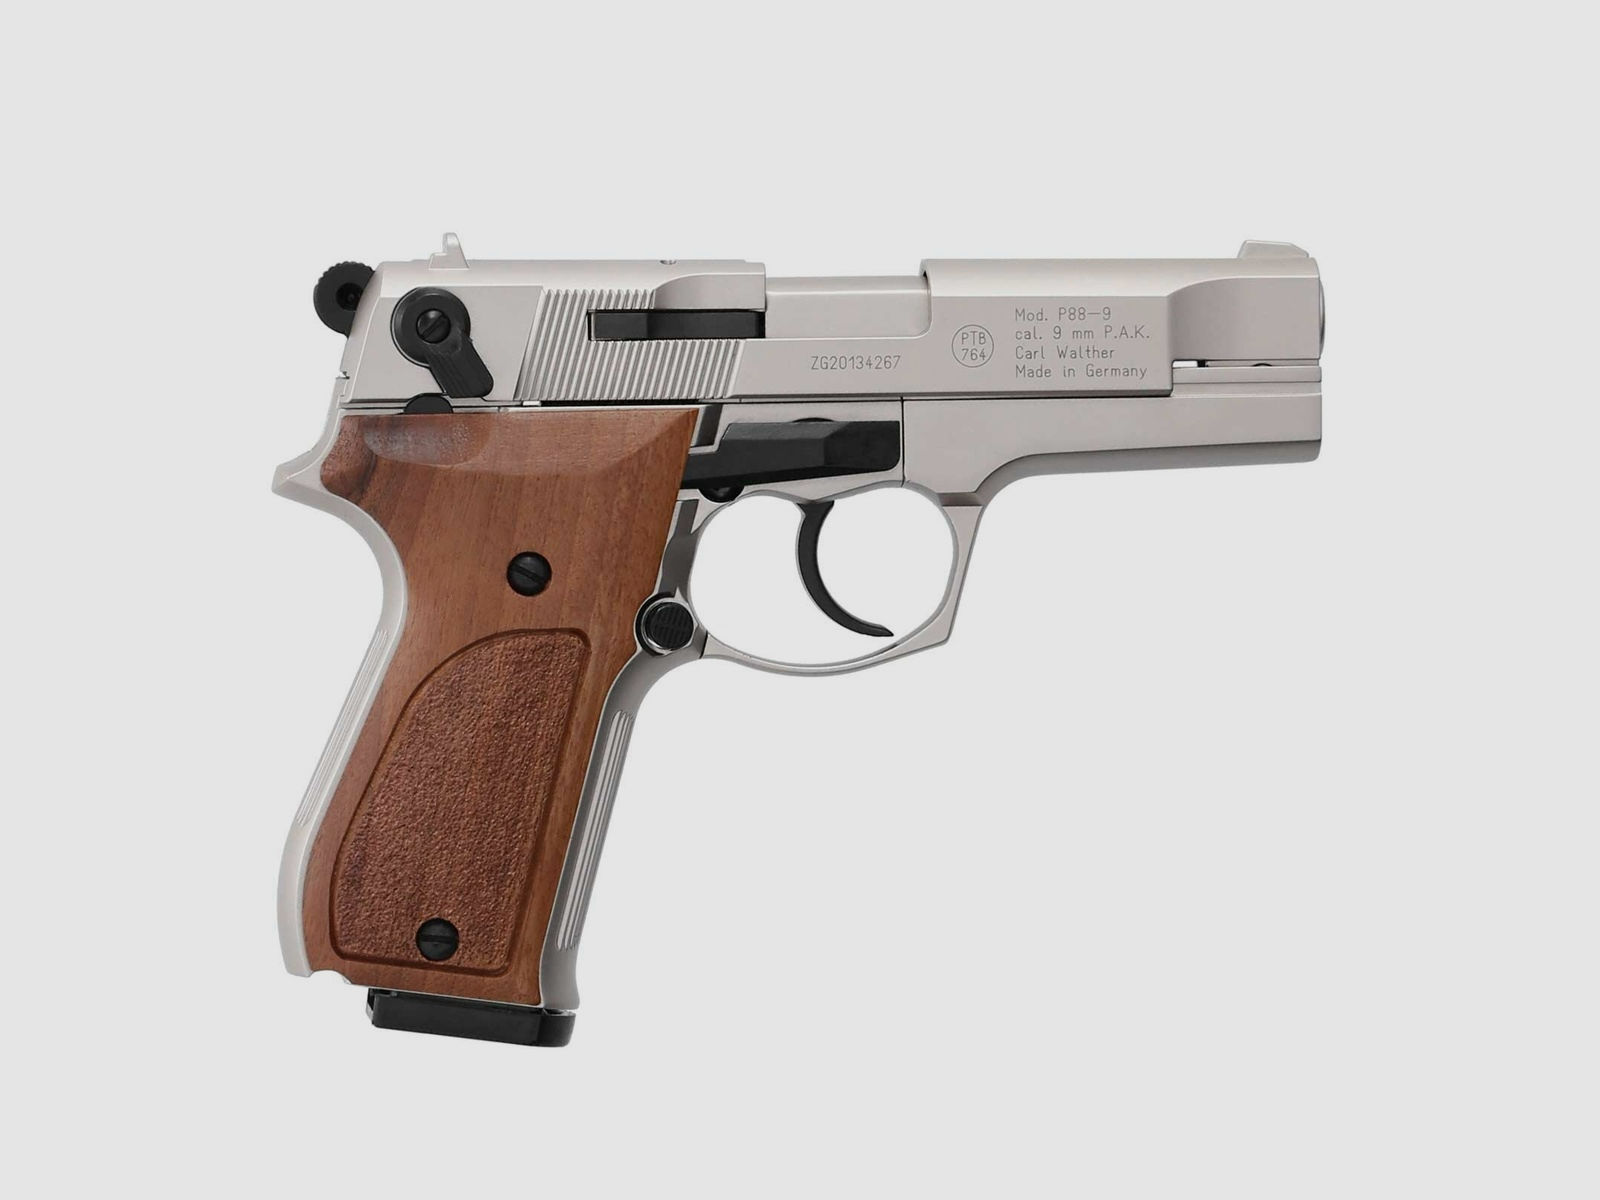 SET Walther P88 Schreckschuss Pistole Nickel 9 mm P.A.K. (P18) + 50 Platzpatronen 9 mm P.A.K.